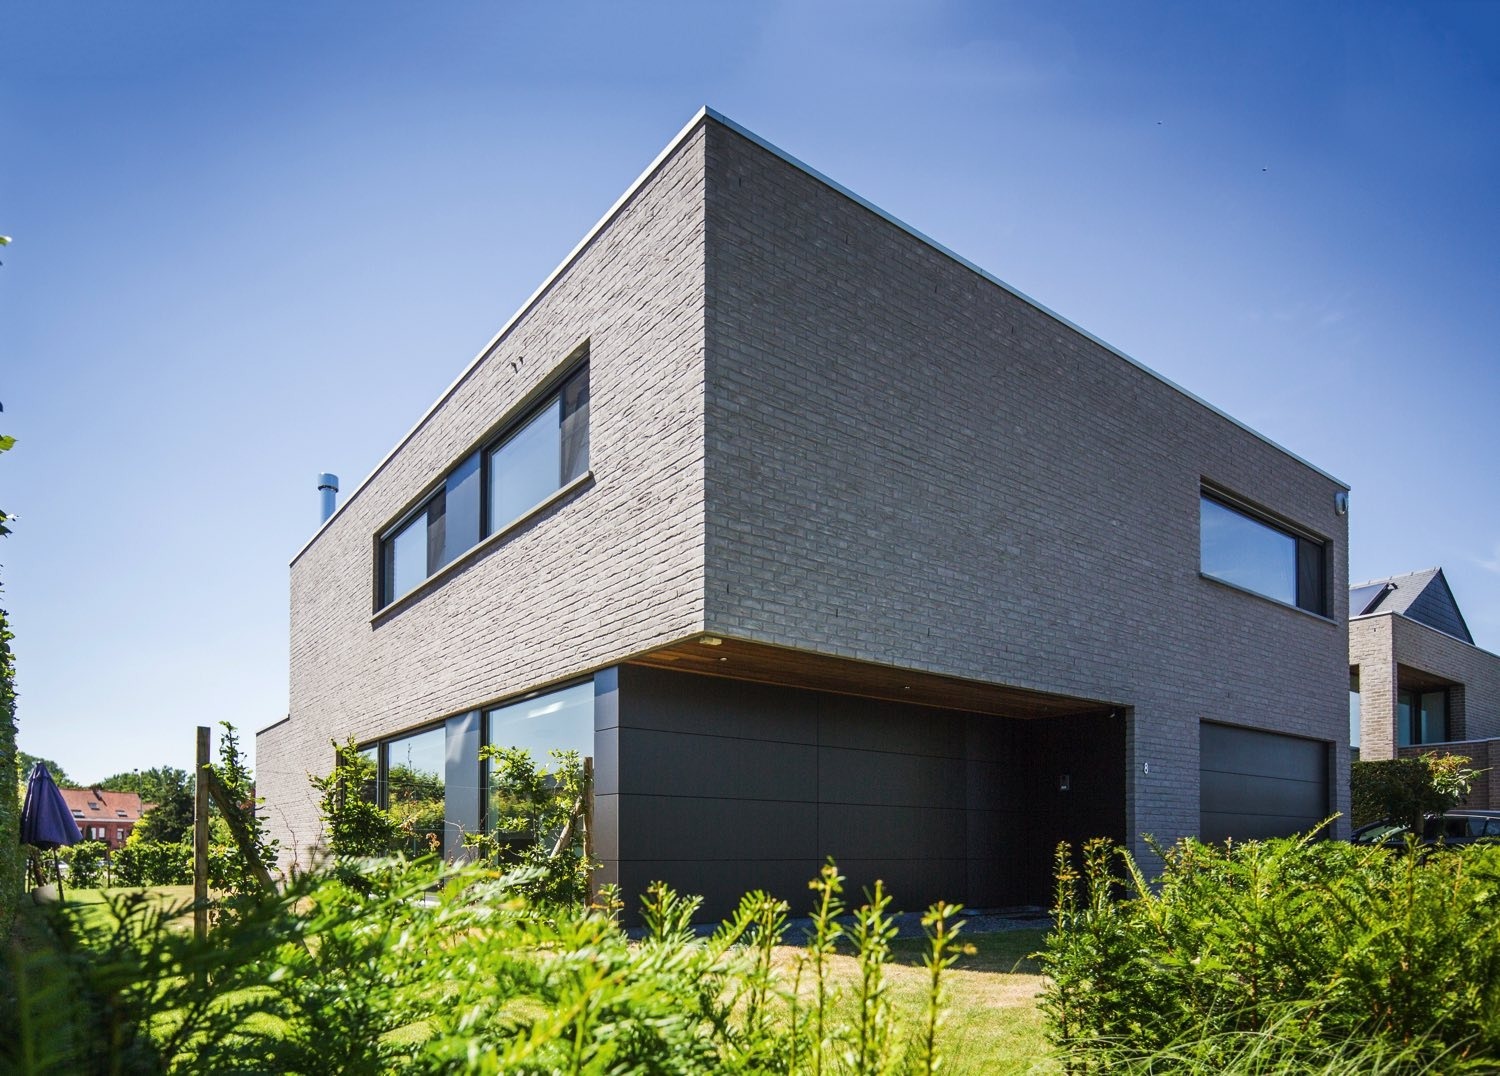 Maison moderne à ossature bois, semi-mitoyenne, brique gris, des panneaux HPL de Trespa